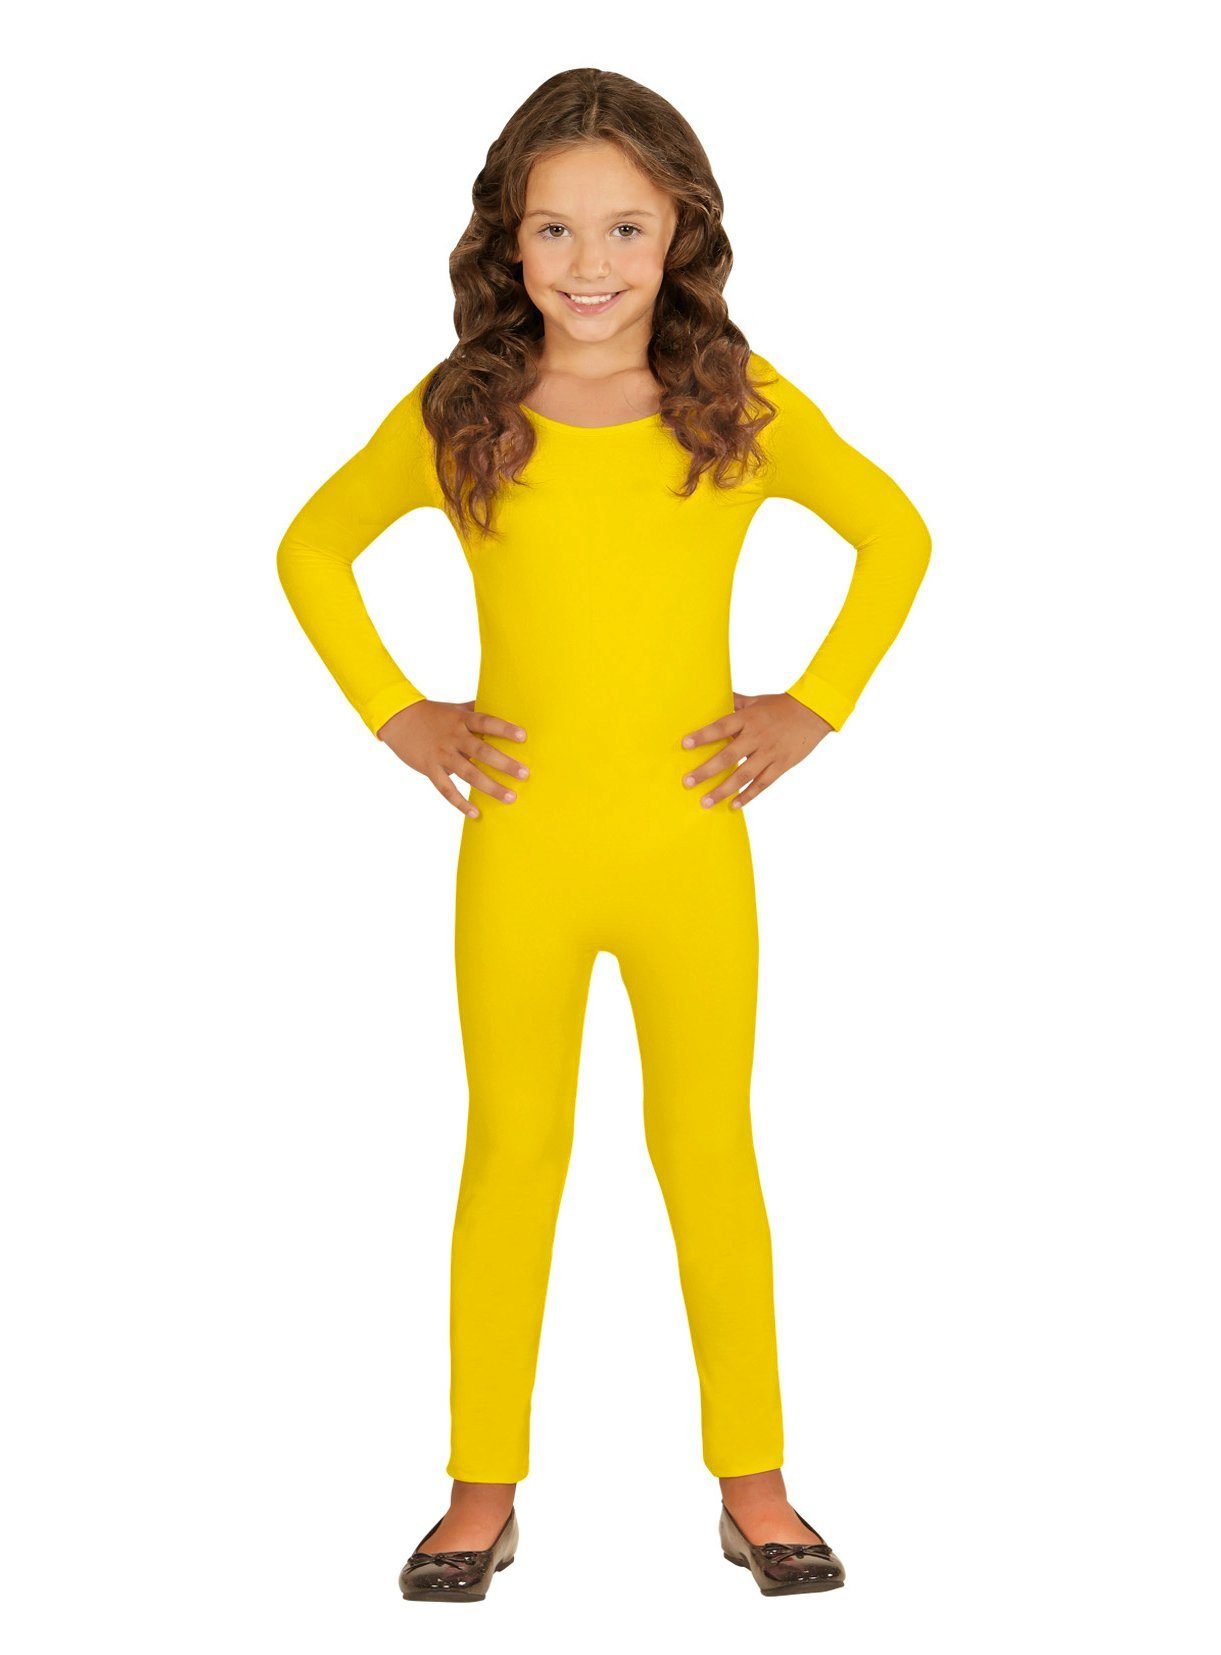 Widdmann Kostüm Langer Body gelb, Einfarbige Basics zum individuellen Kombinieren